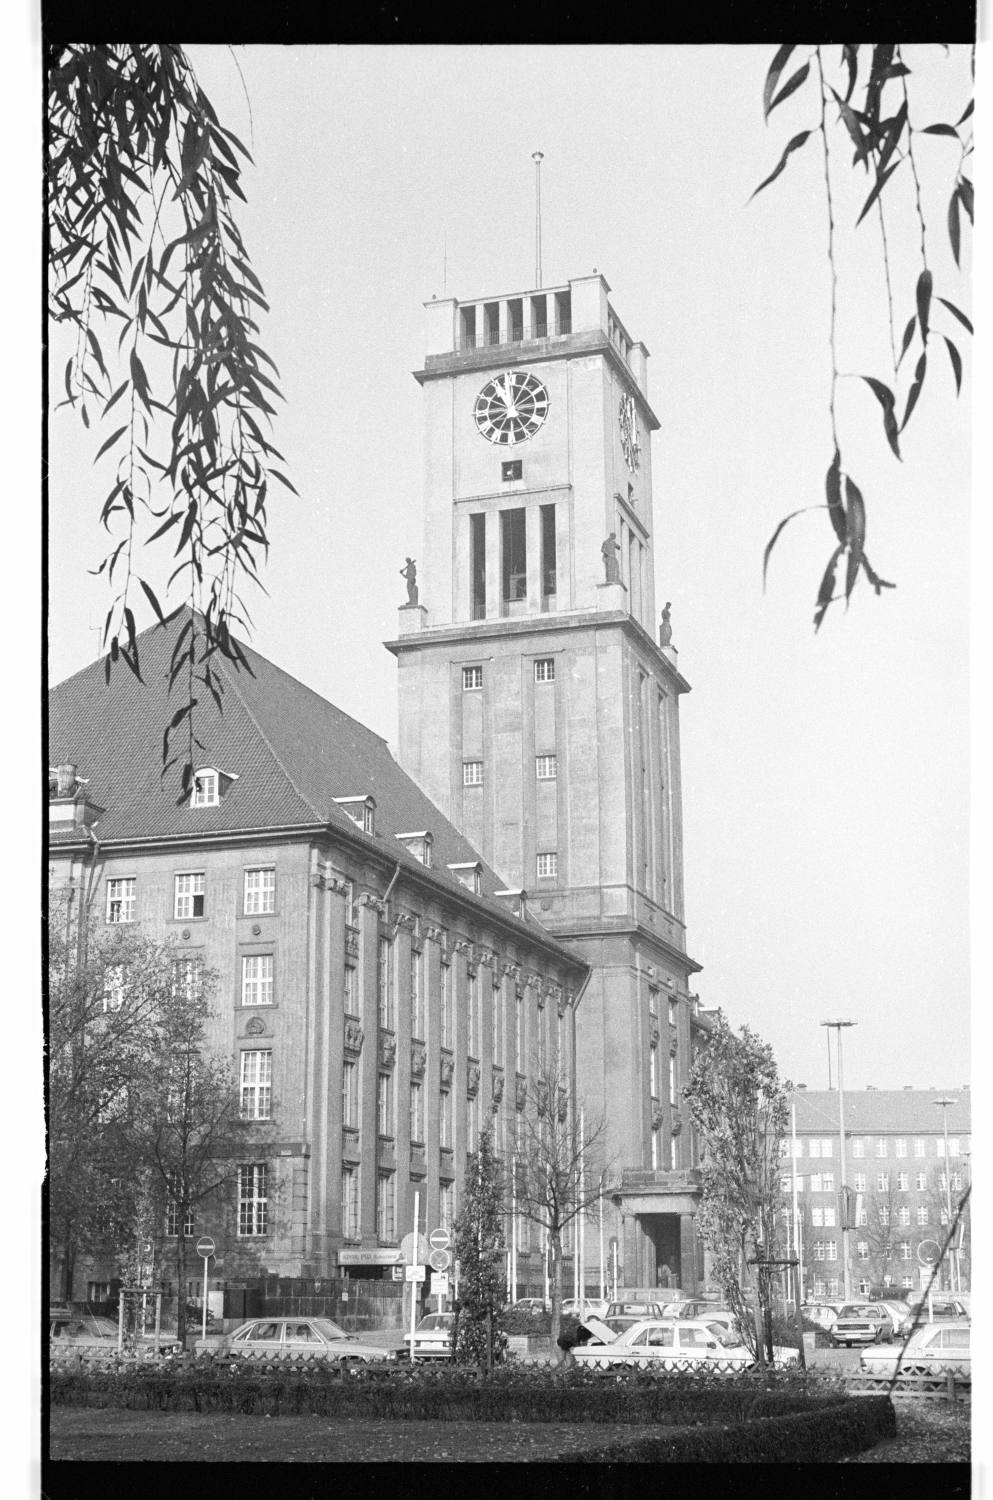 Kleinbildnegative: Rathaus Schöneberg, Rudolph-Wilde-Park, 1978 (Museen Tempelhof-Schöneberg/Jürgen Henschel RR-F)